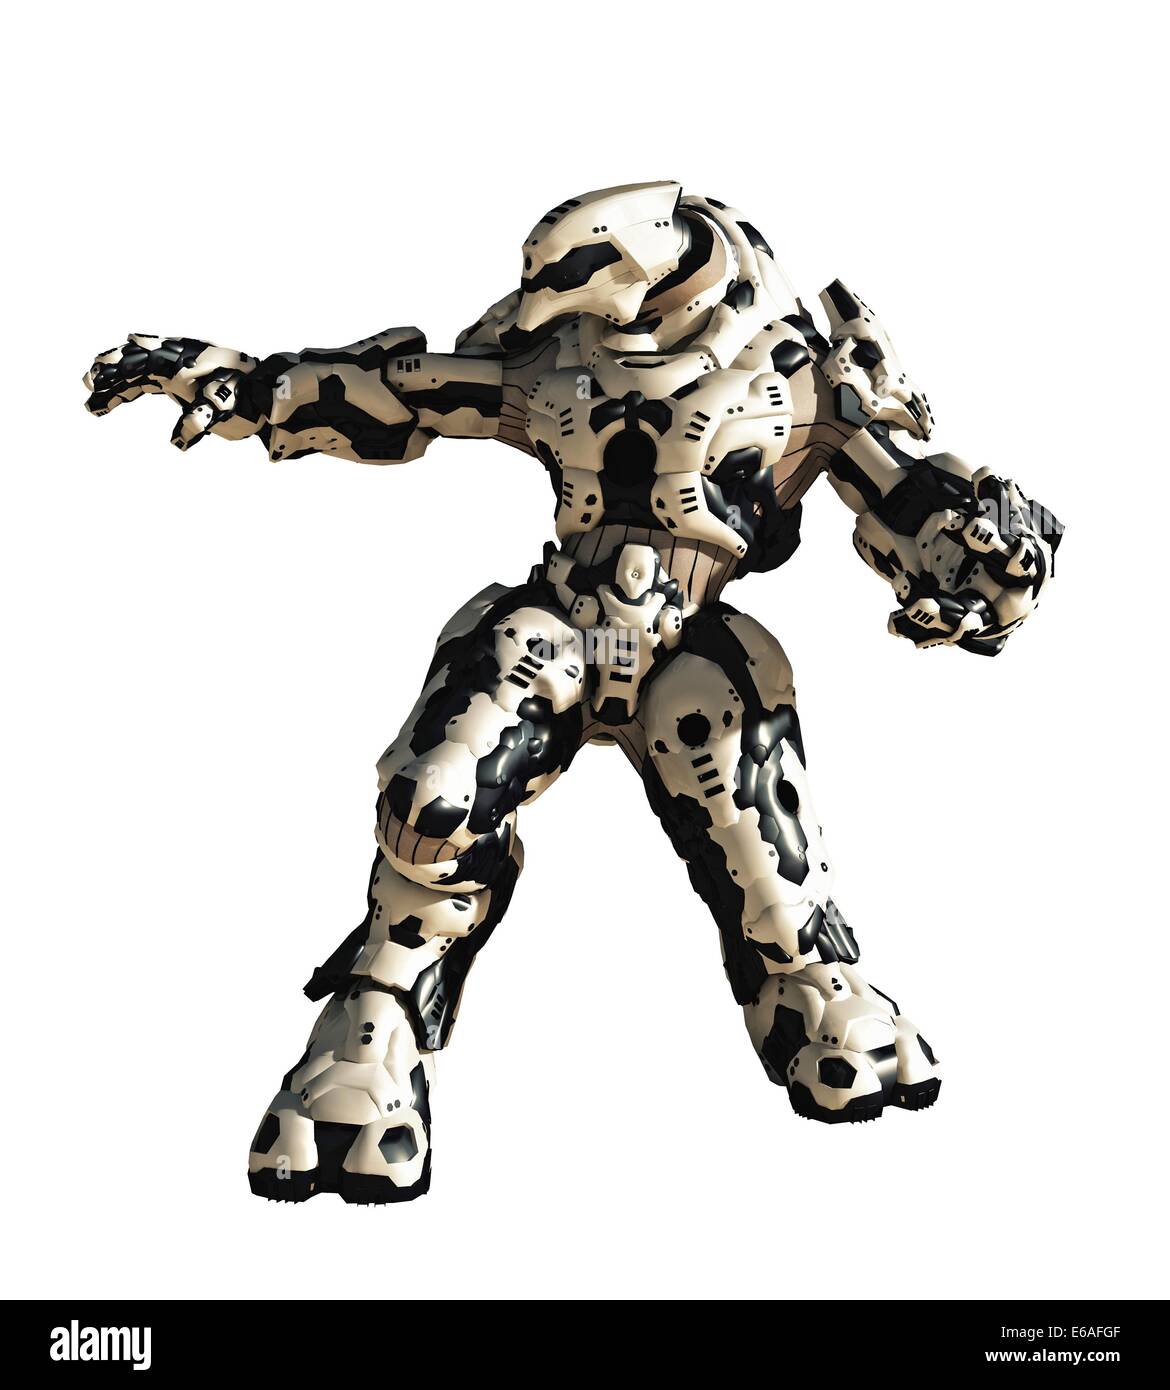 La science-fiction Robot de combat Banque D'Images